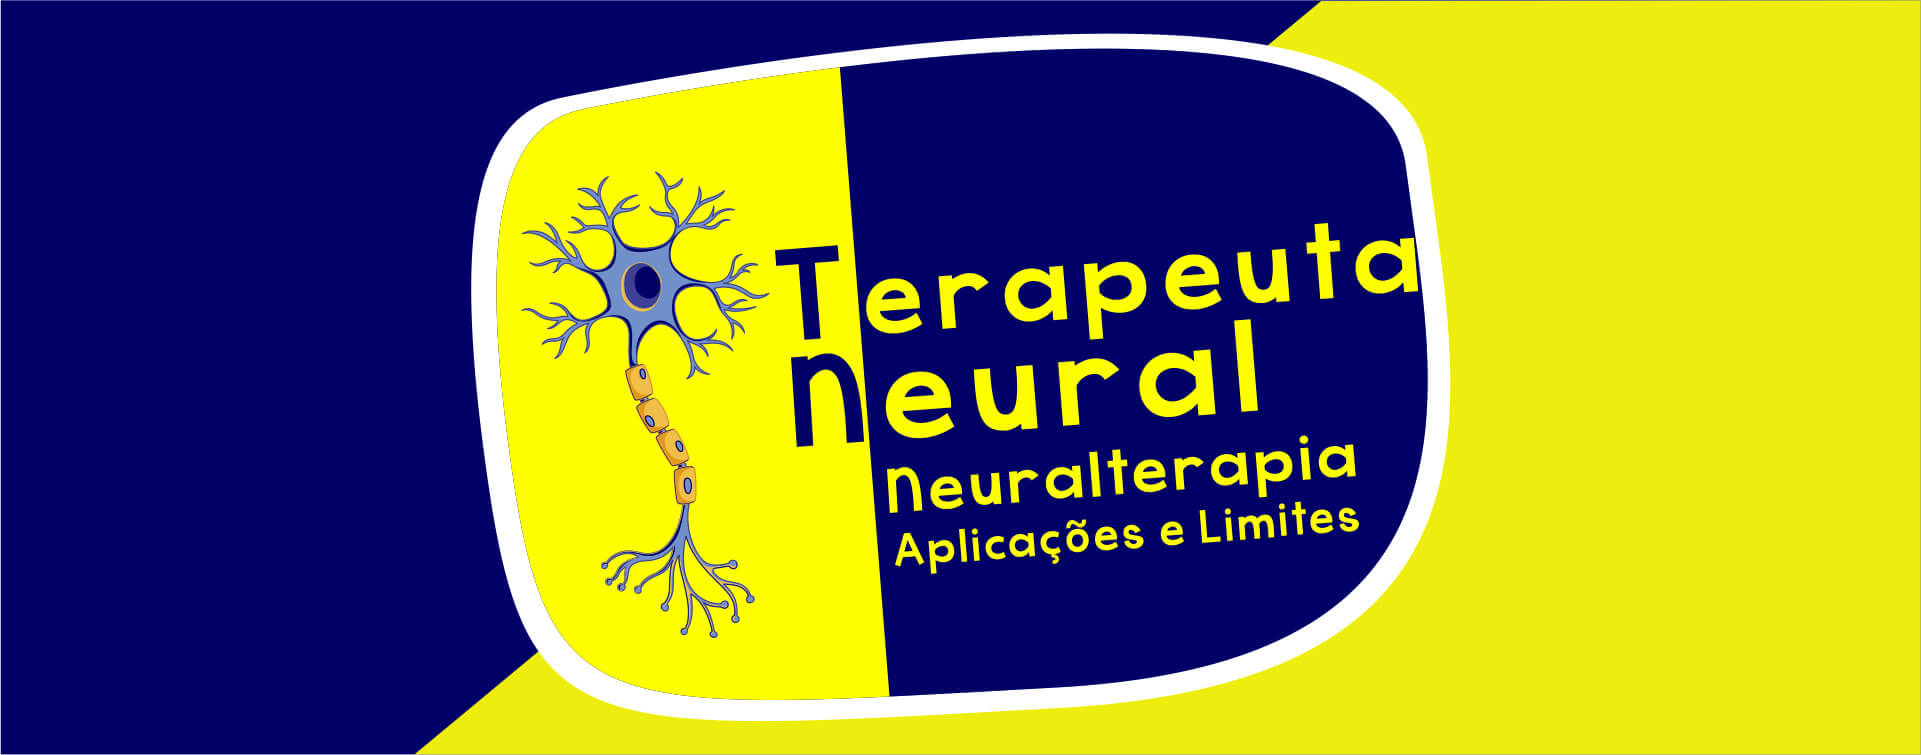 Guia de Terapia Neural